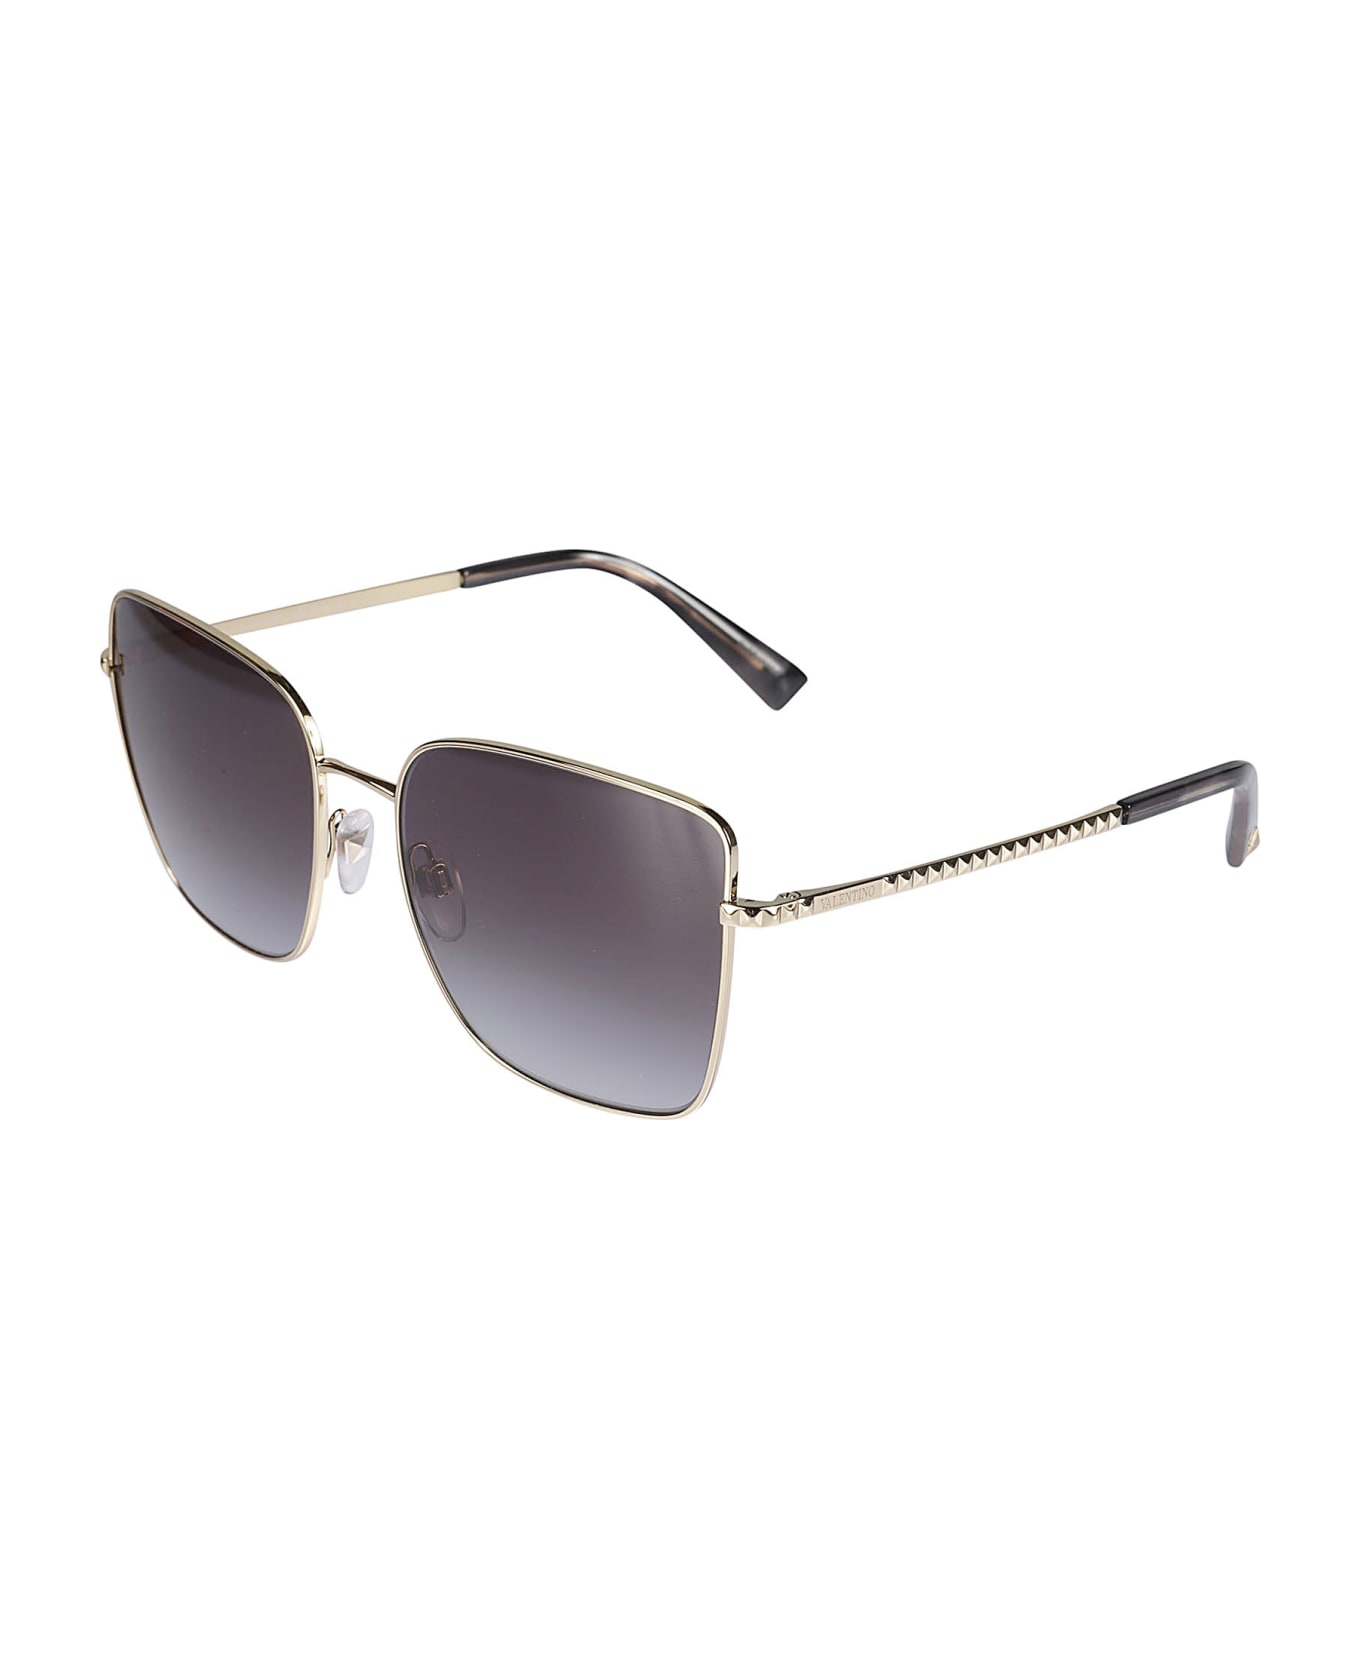 Valentino Eyewear Sole30038g Sunglasses - 30038g サングラス